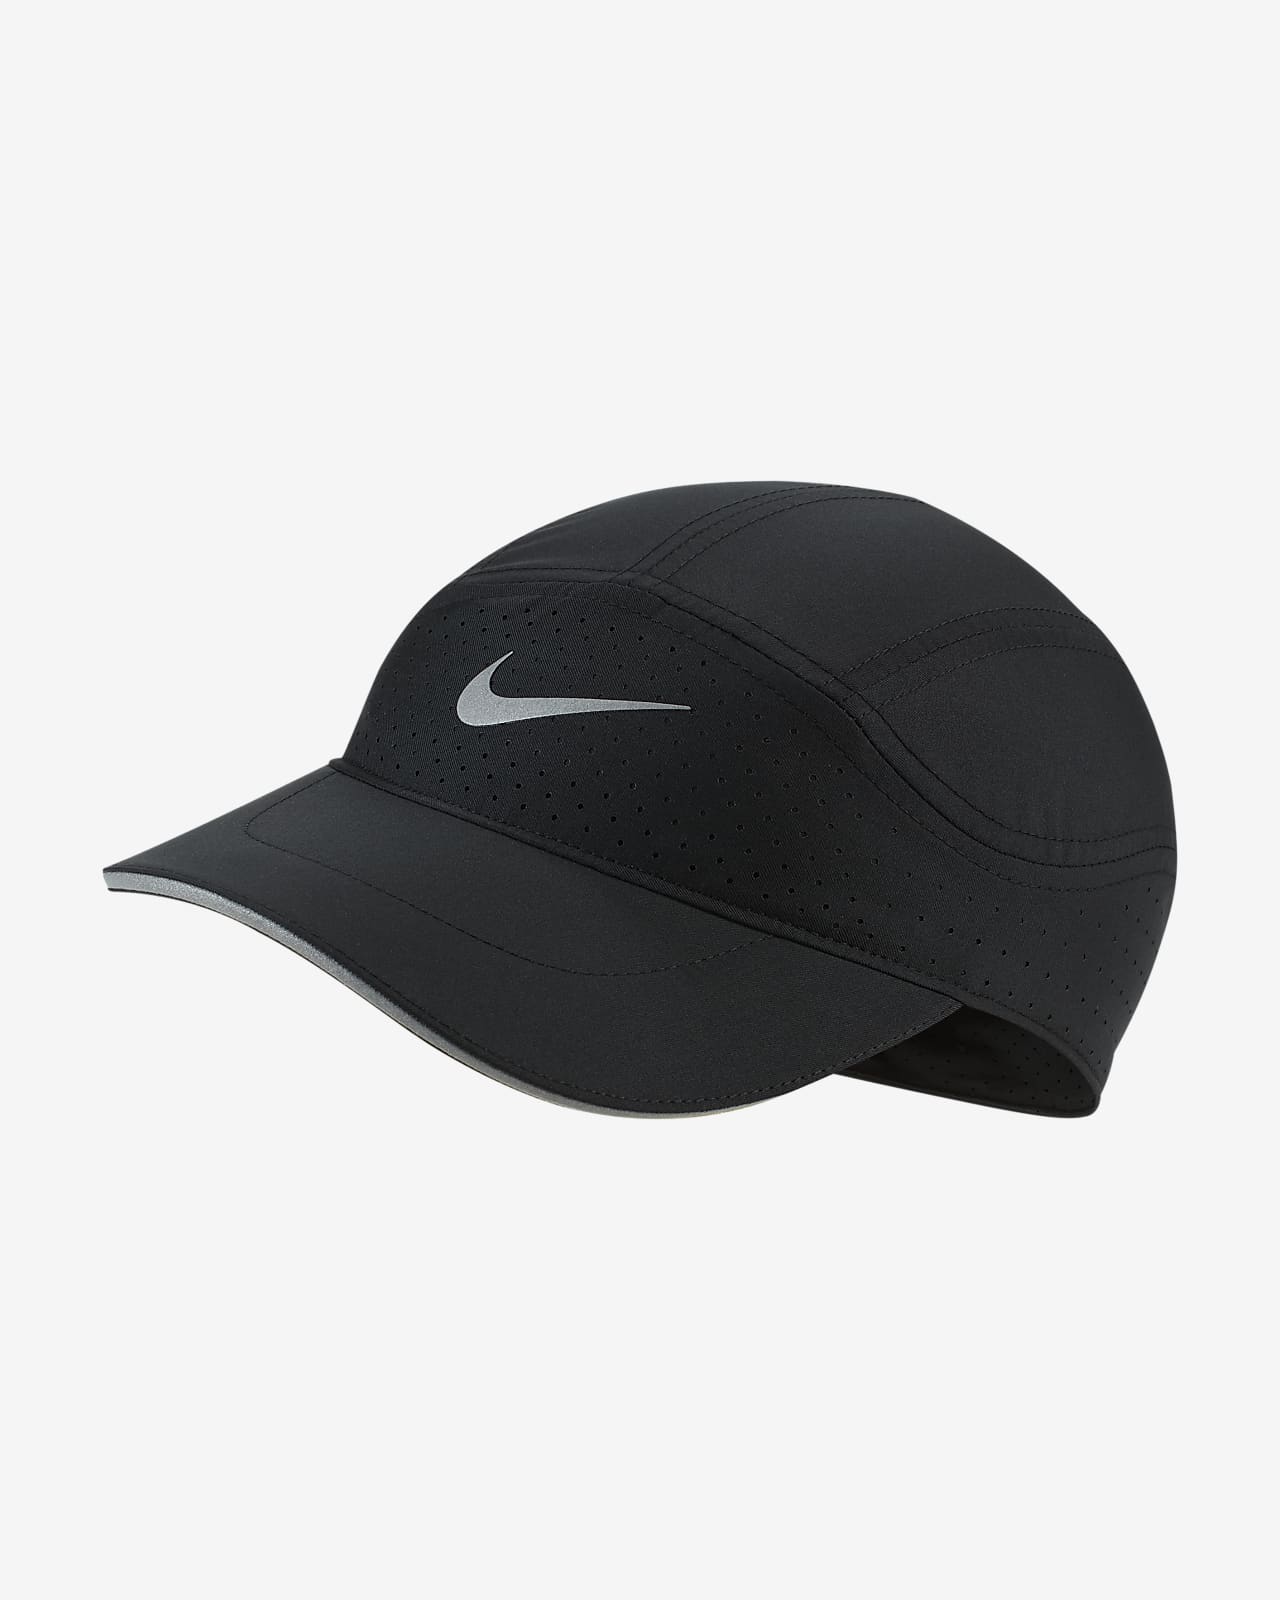 Nike AeroBill Tailwind 跑步帽。Nike TW